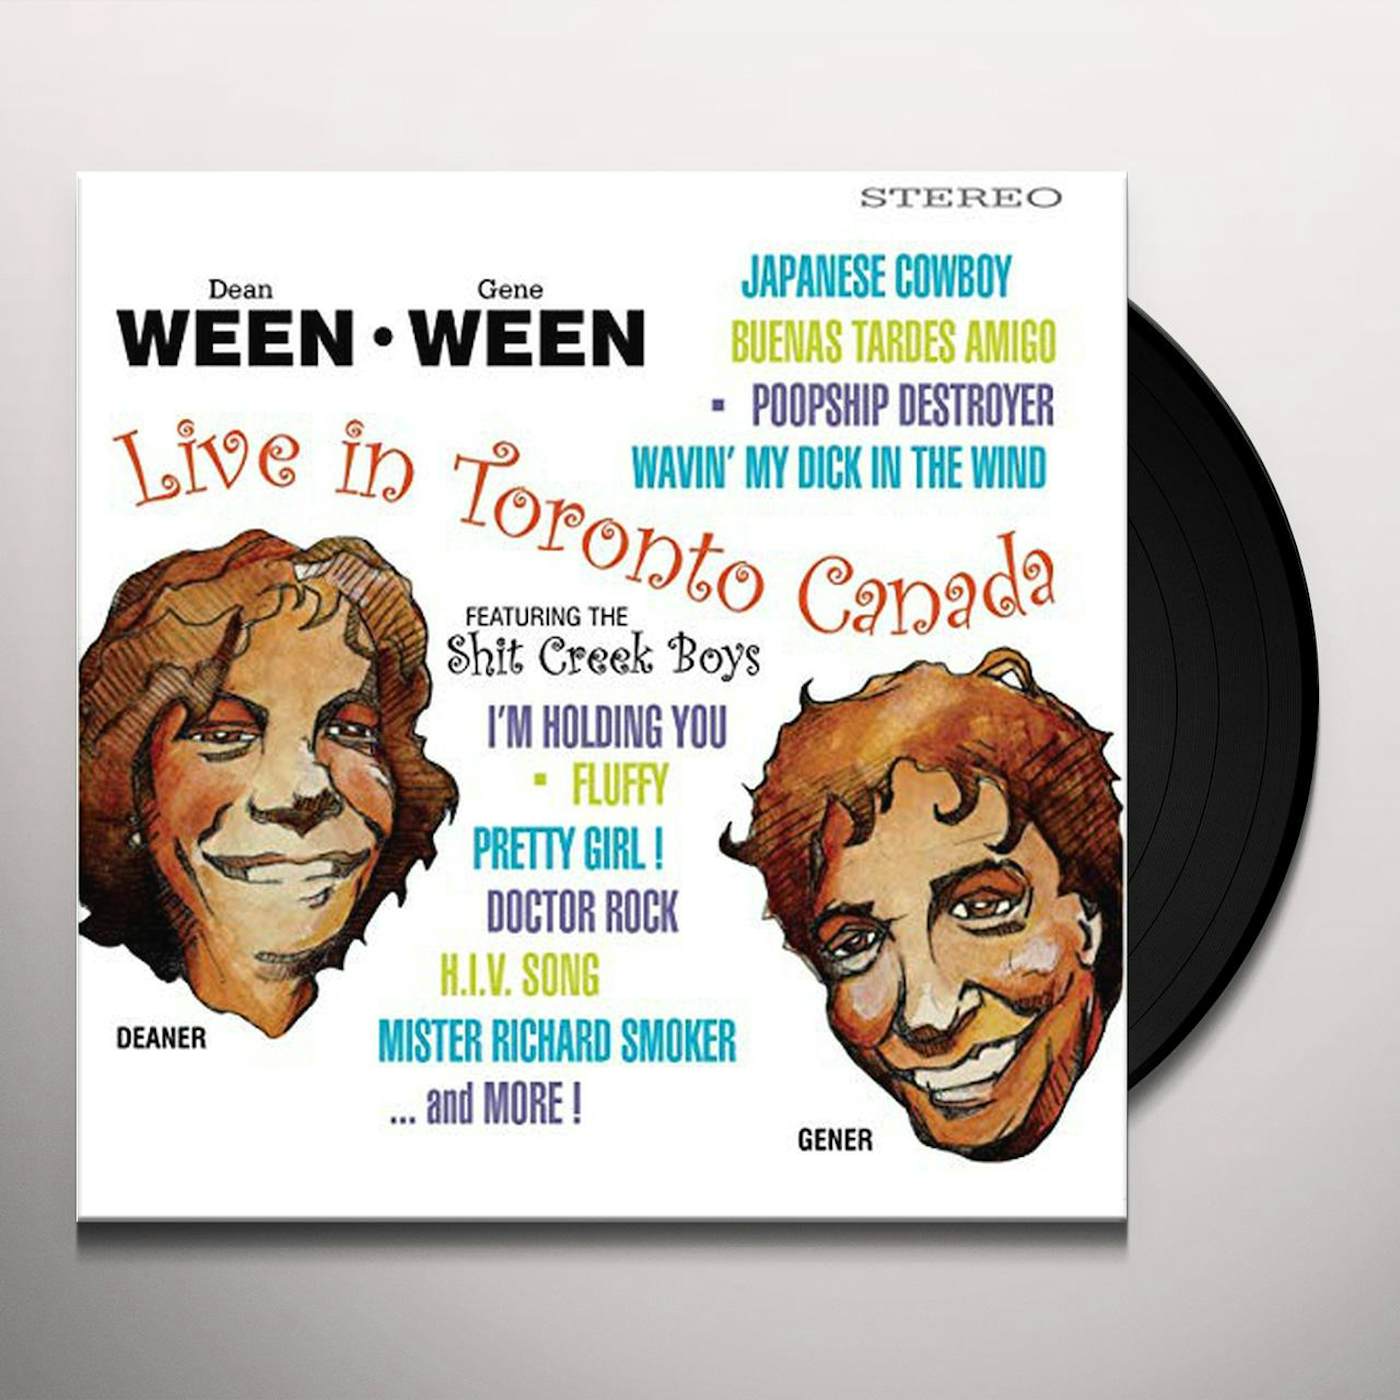 Ween - Paintin' The Town Brown: Ween Live 1990-1998 (Brown Vinyl LP)